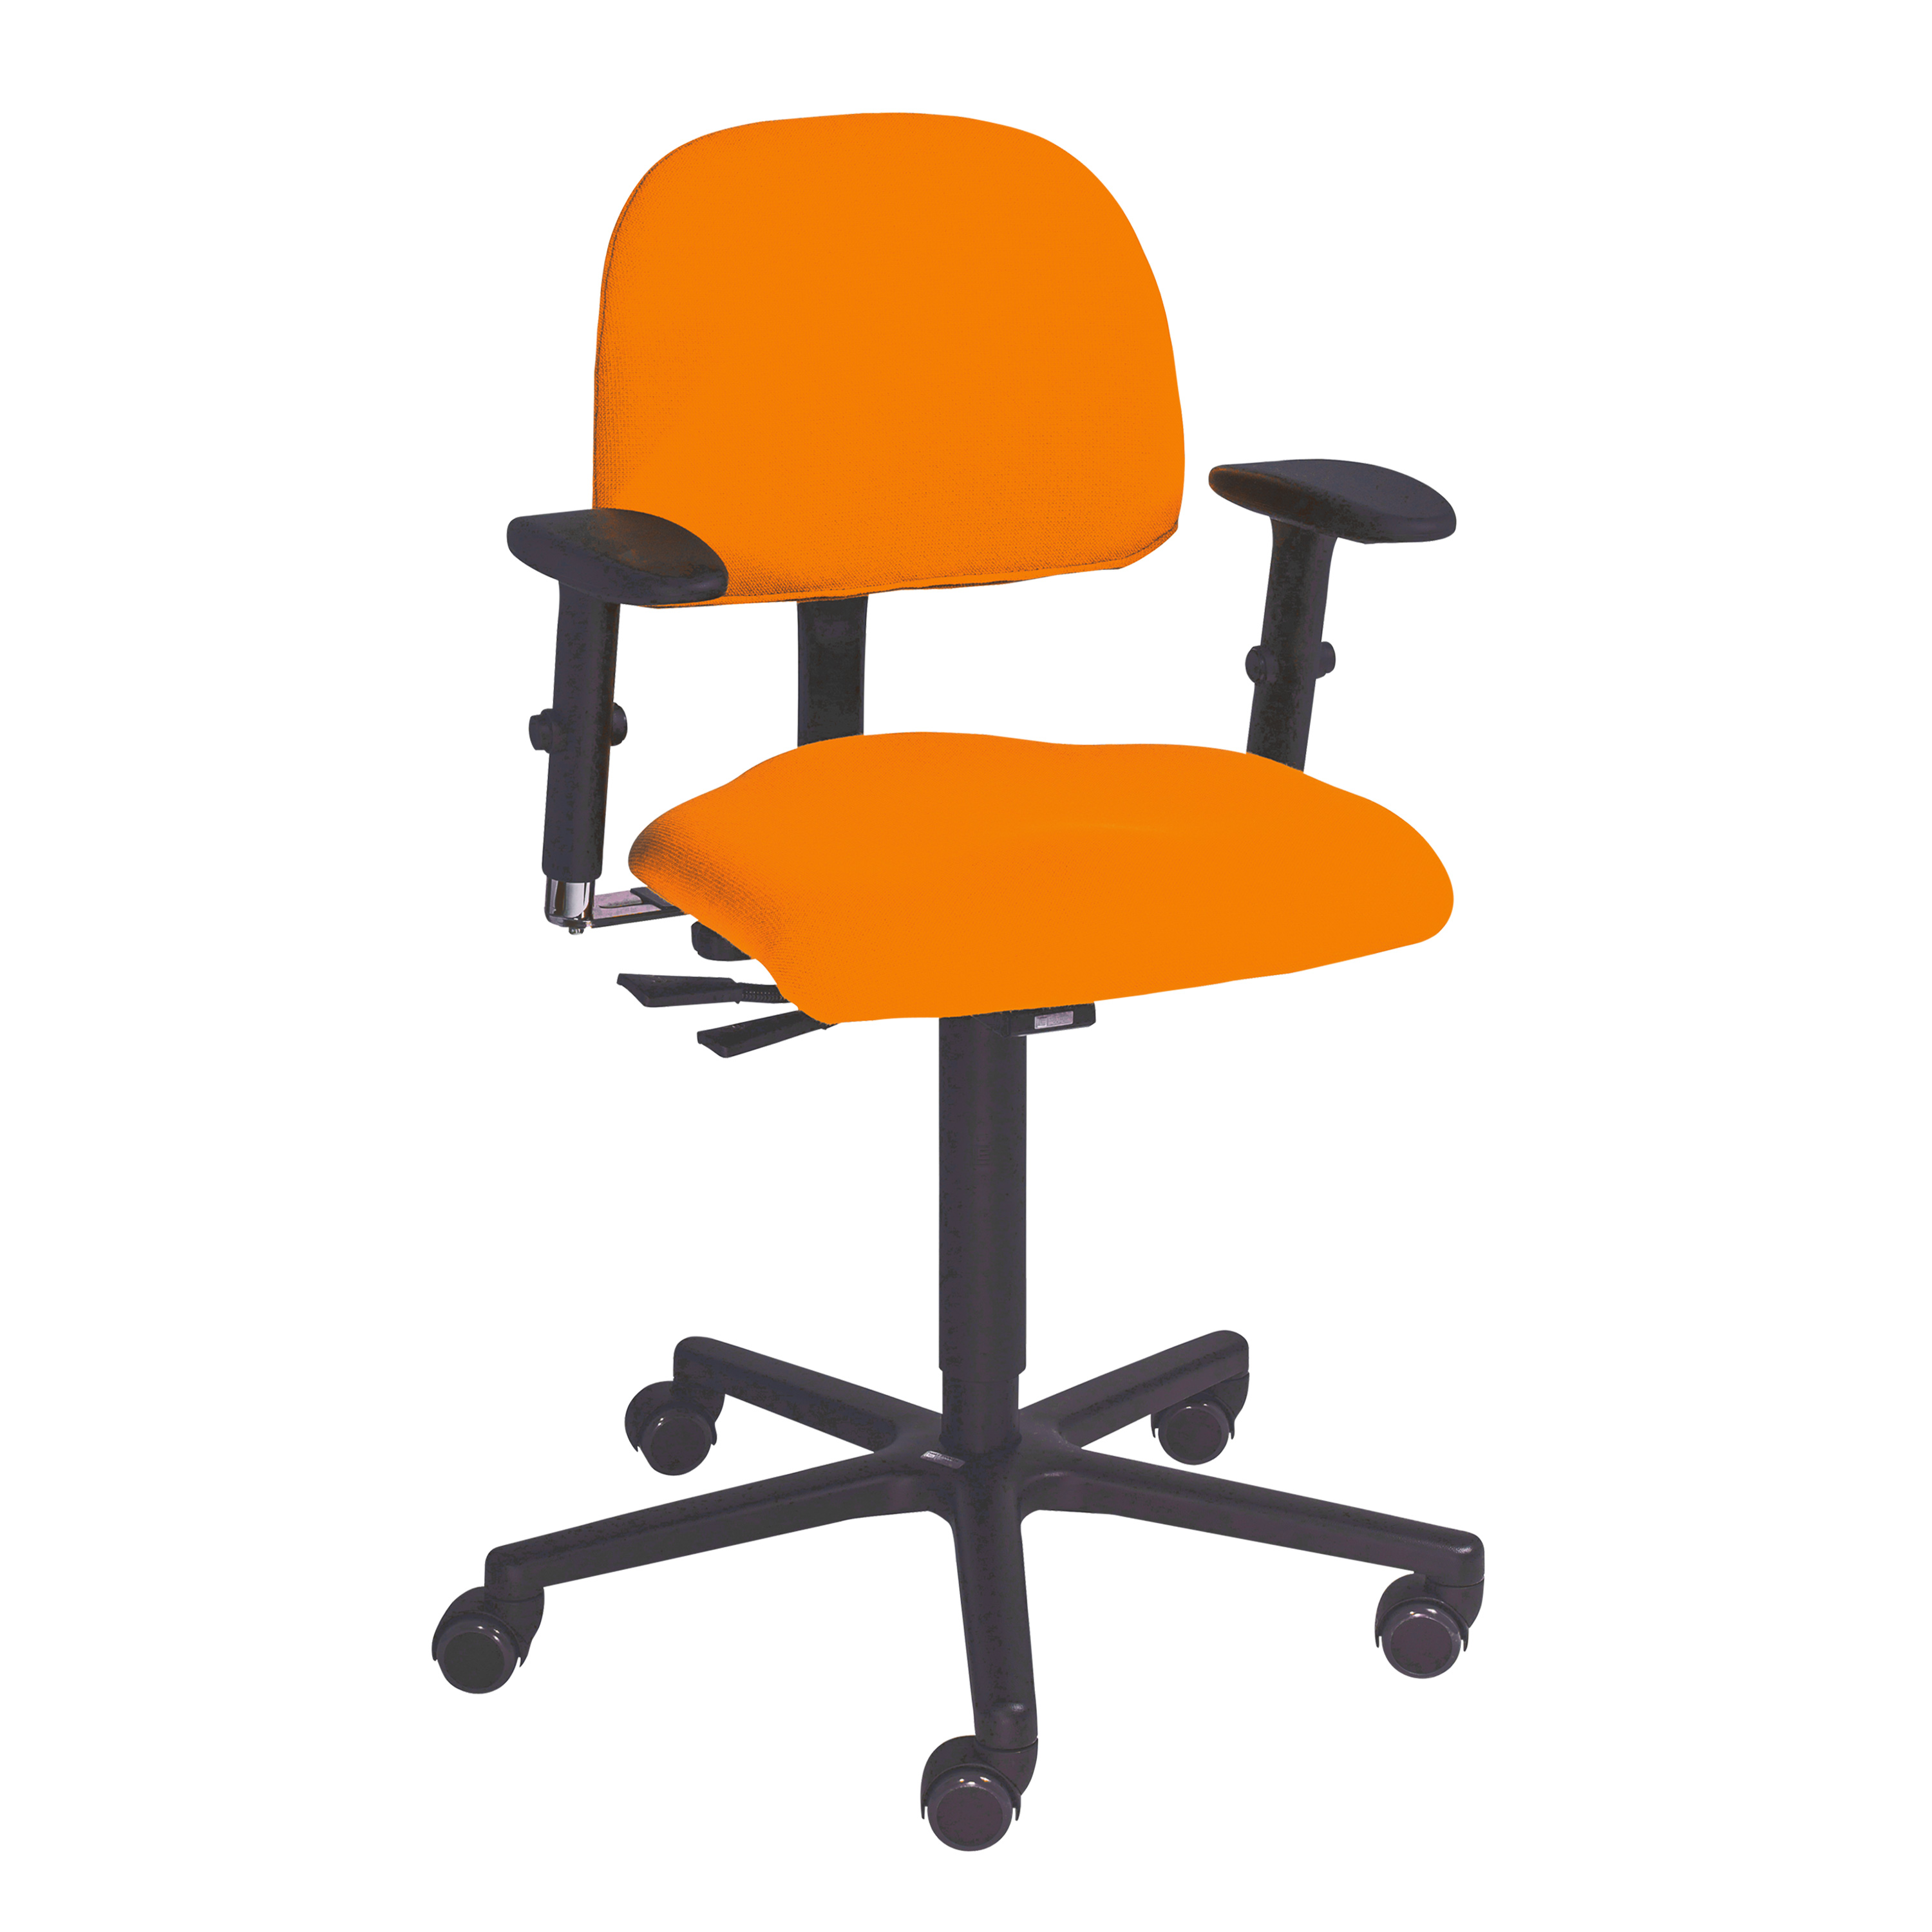 LeitnerVario DuoMesh-Schonbezug für Sitzfläche, orange